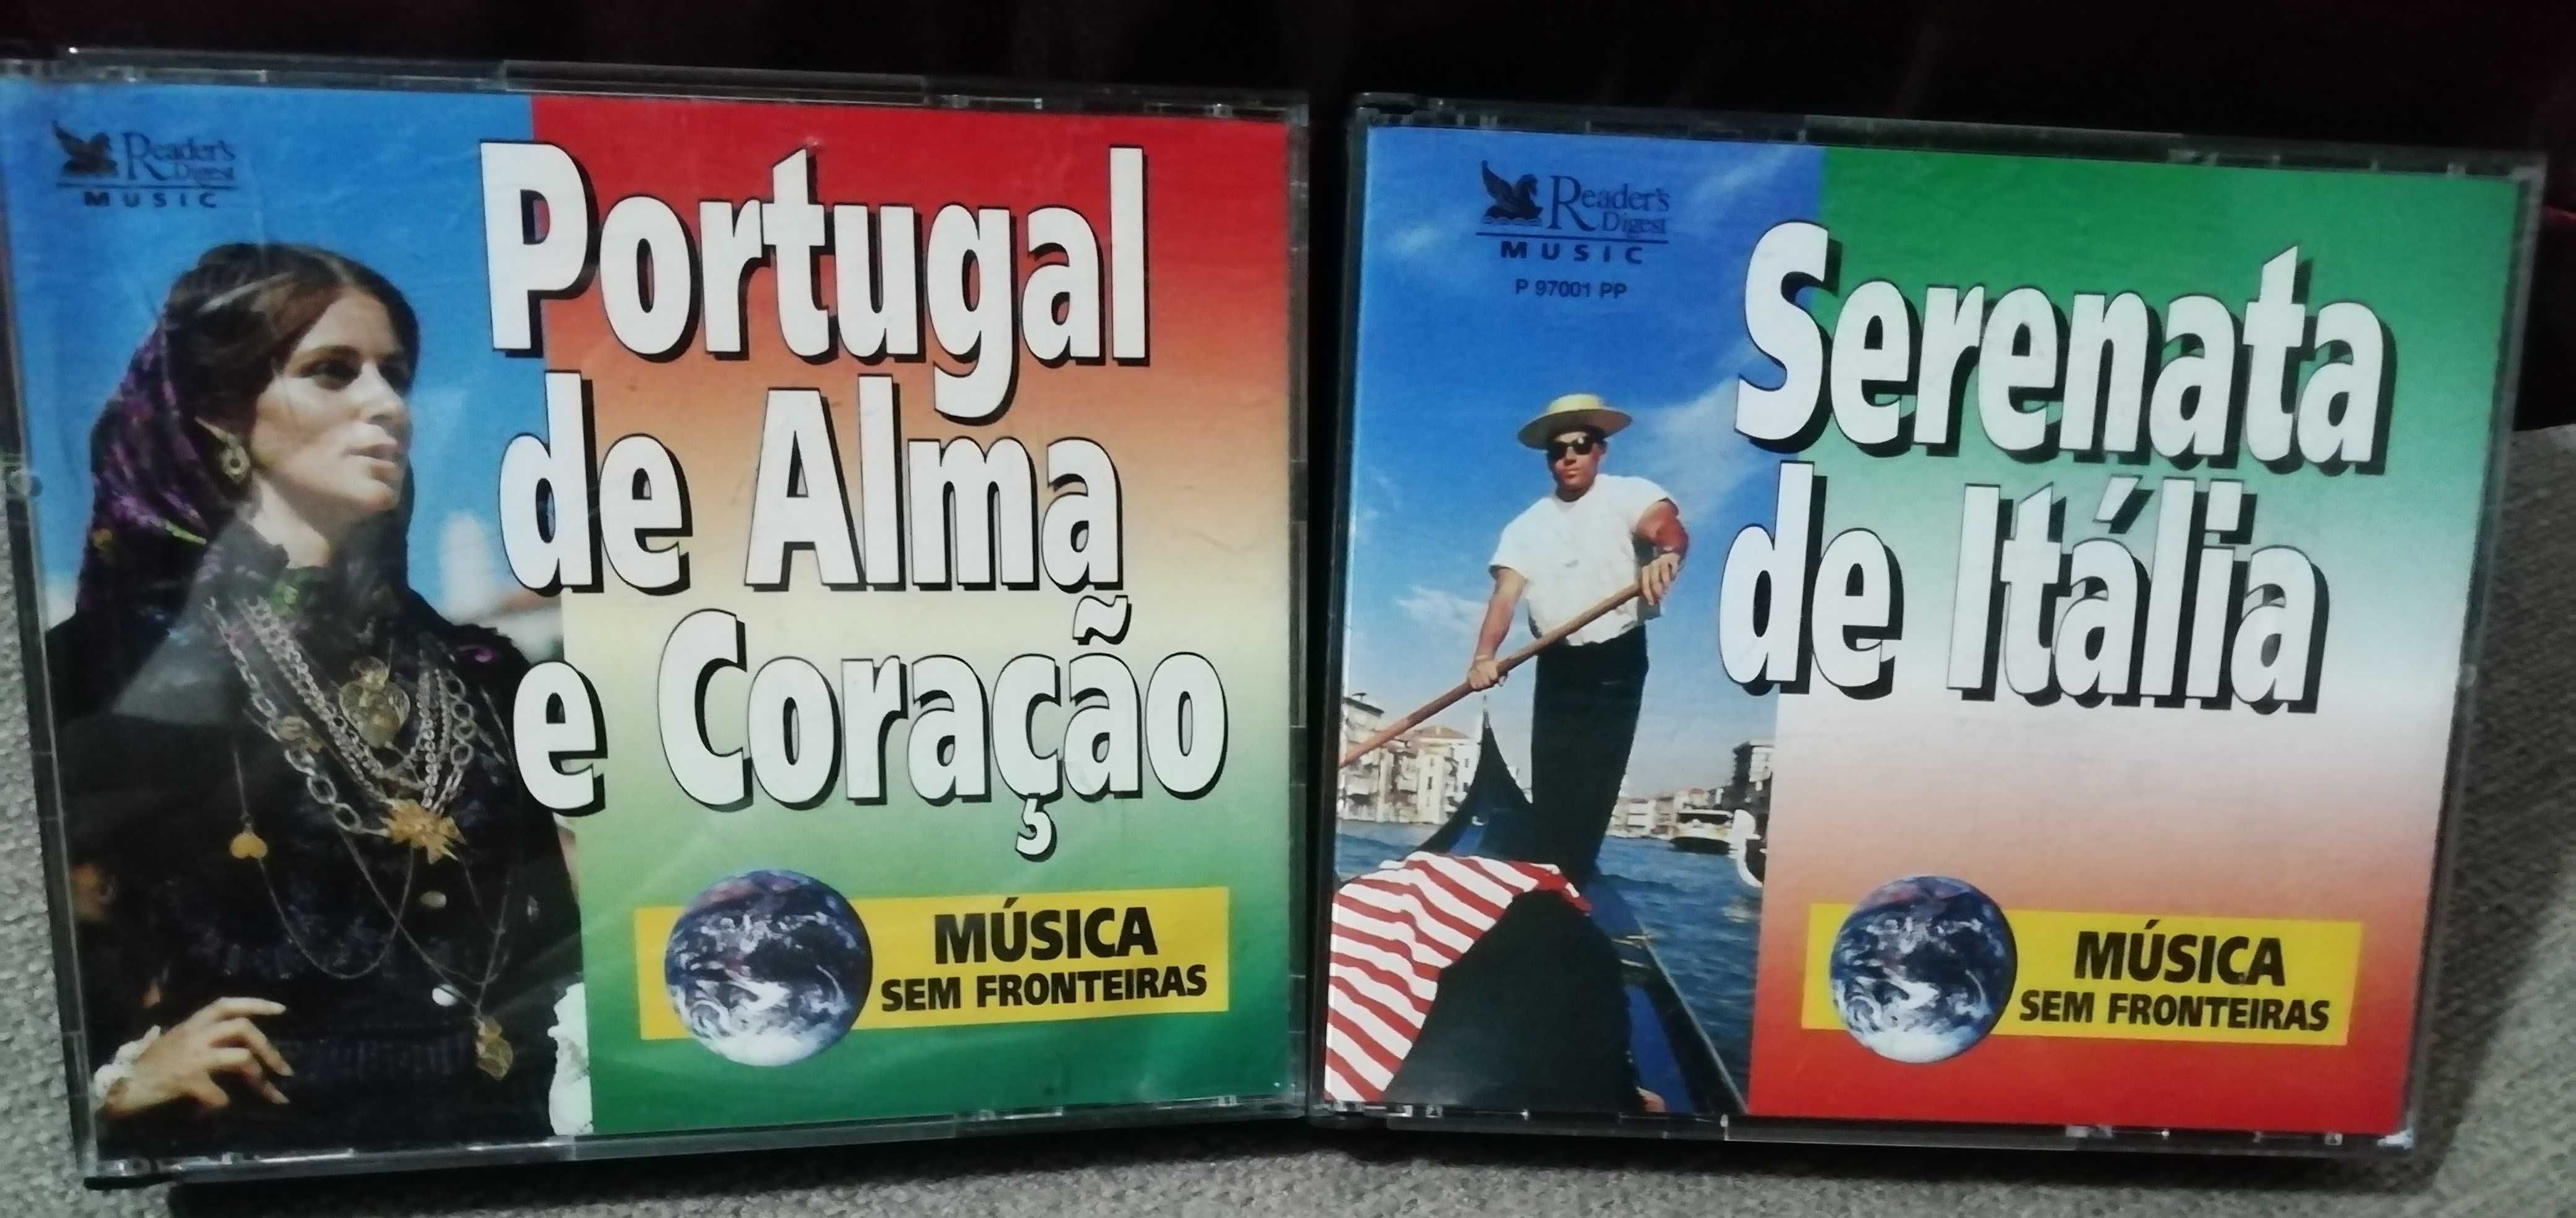 Coleções CD Box - Portugal de alma e coração & Serenata de Itália